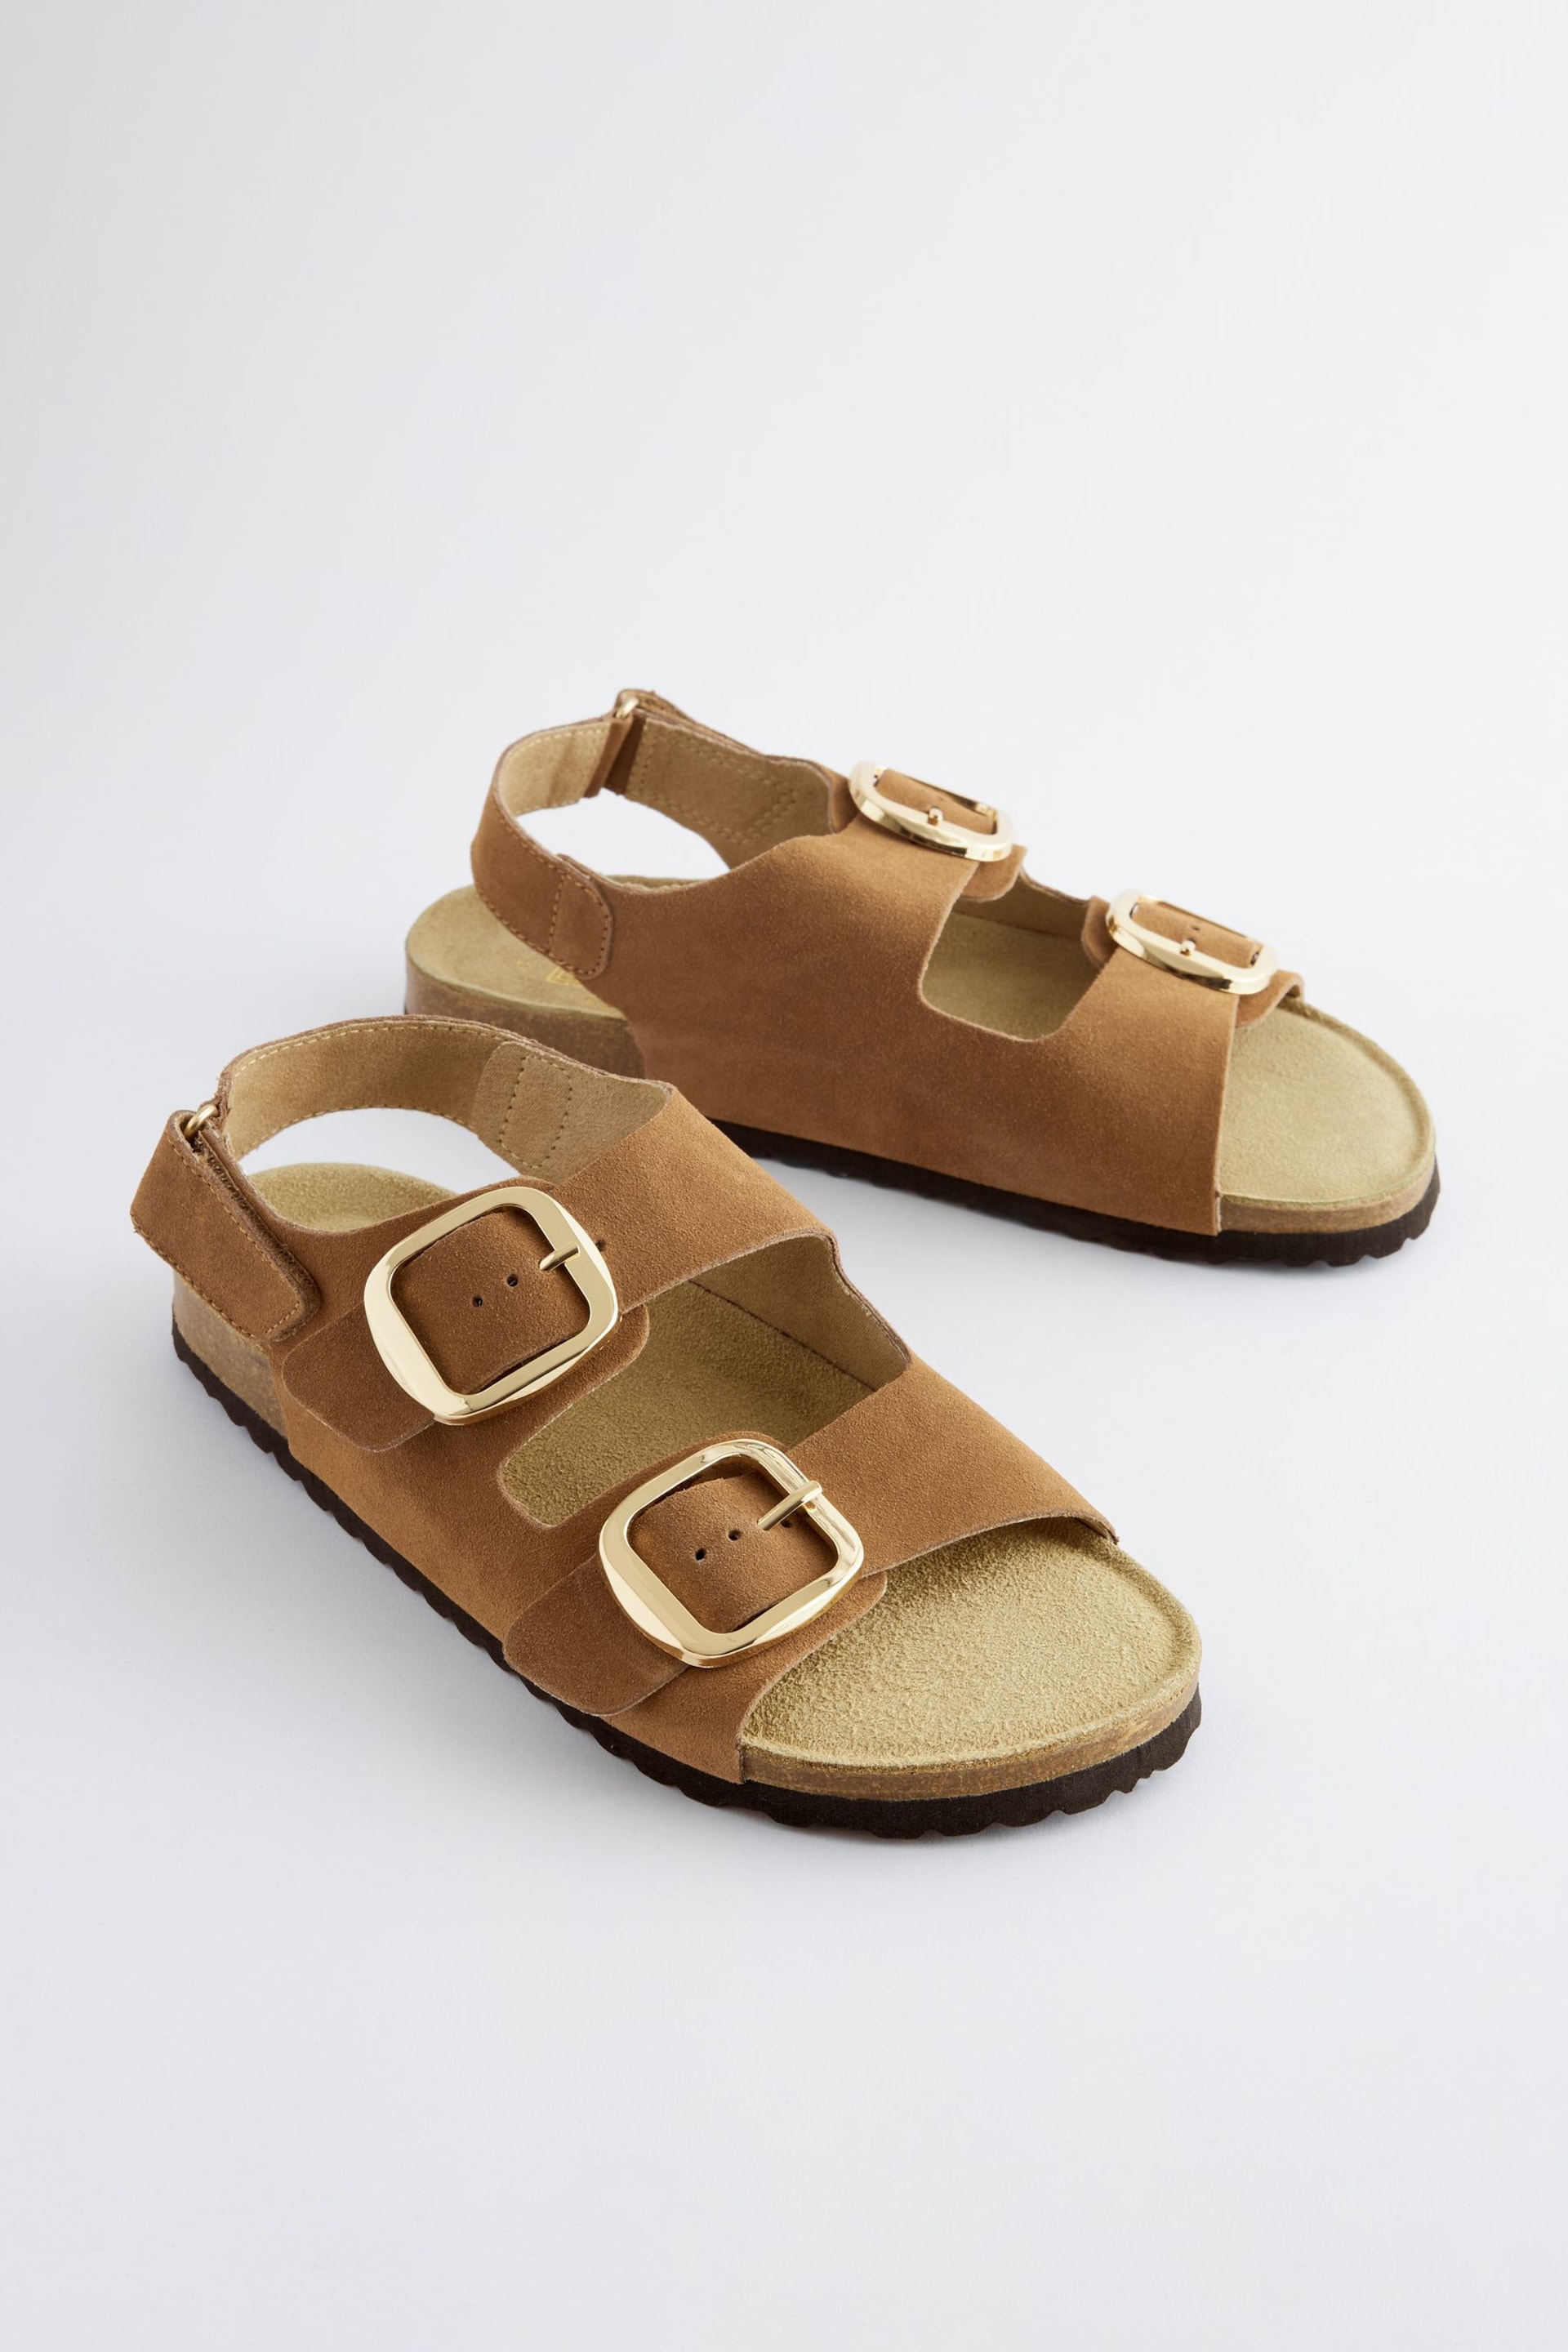 Golden Tan Back Strap Leather Footbed Sandals - Image 1 of 5